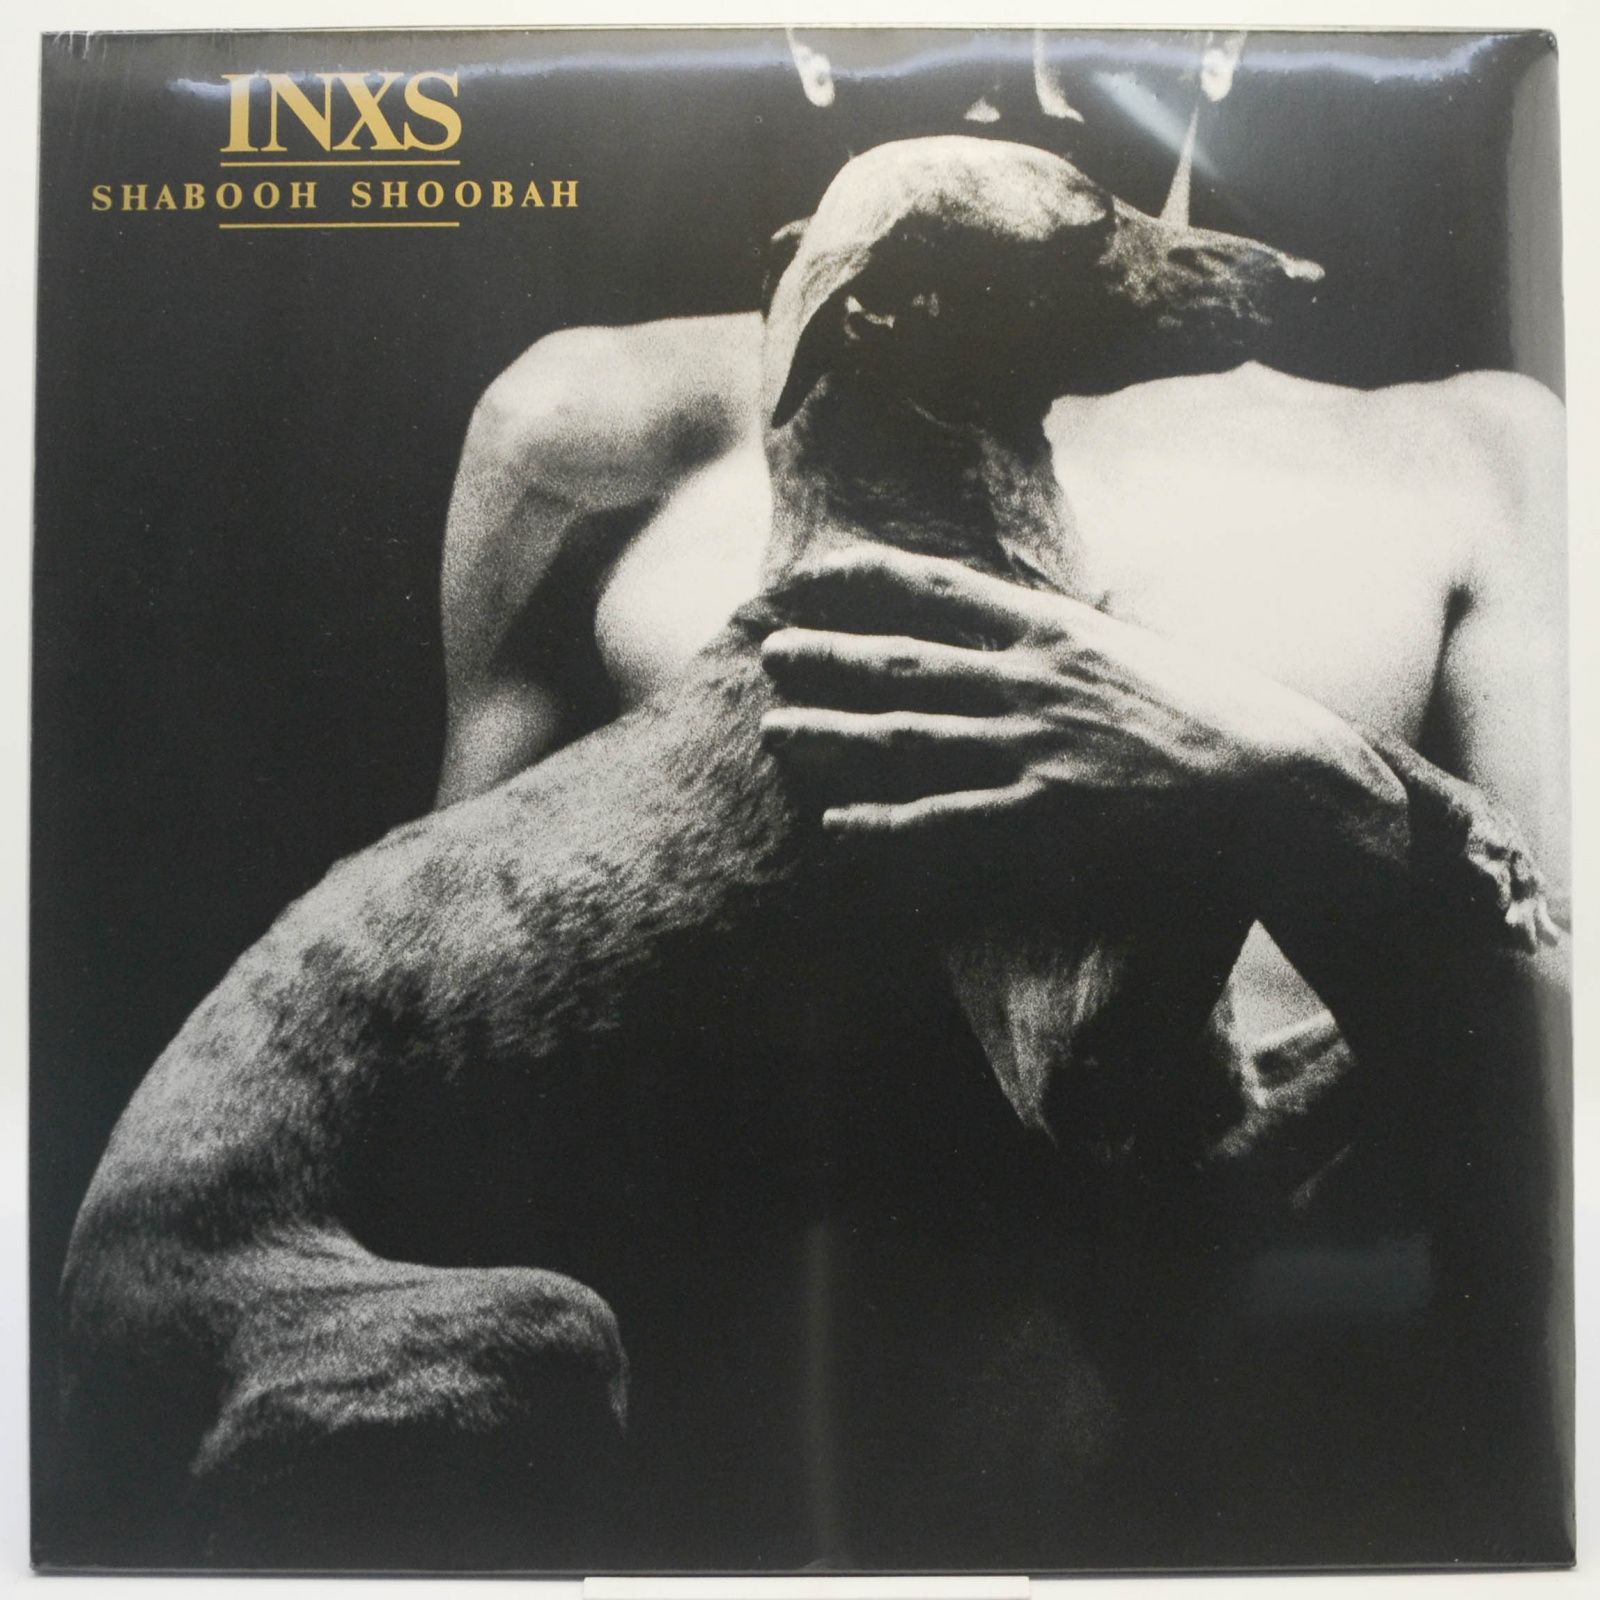 INXS — Shabooh Shoobah, 1982